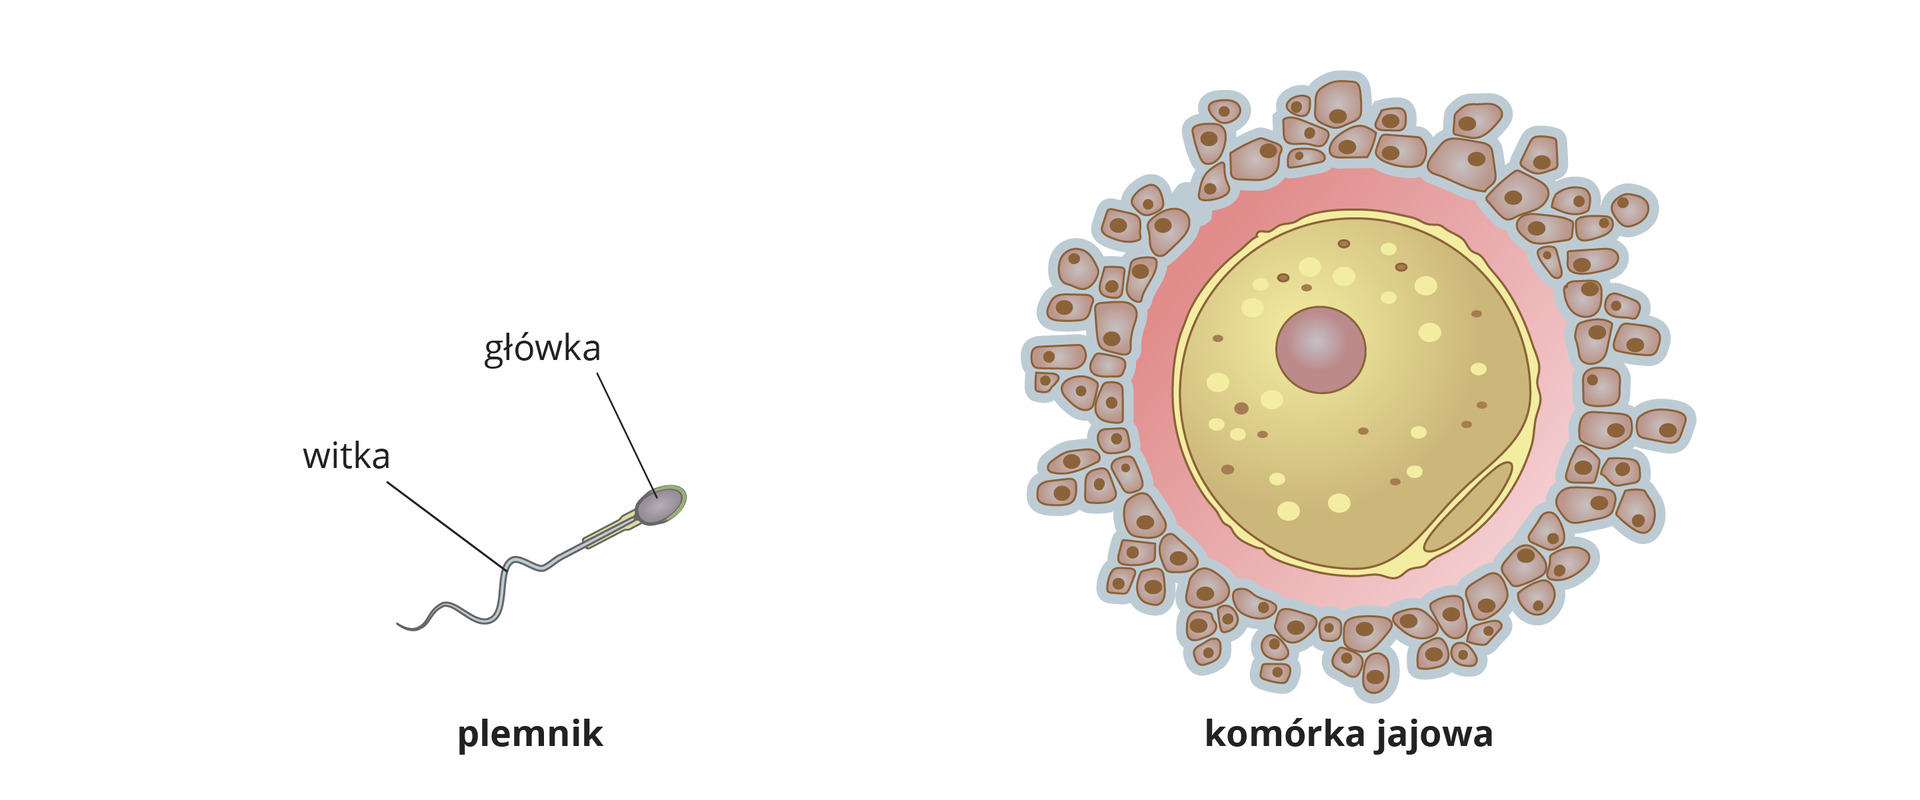 Ilustracja przedstawia plemnik zbudowany z główki i witki. Obok jest duża kulista komórka jajowa z dobrze widocznym jądrem komórkowym. Komórka jajowa otoczona jest wieńcem małych komórek.